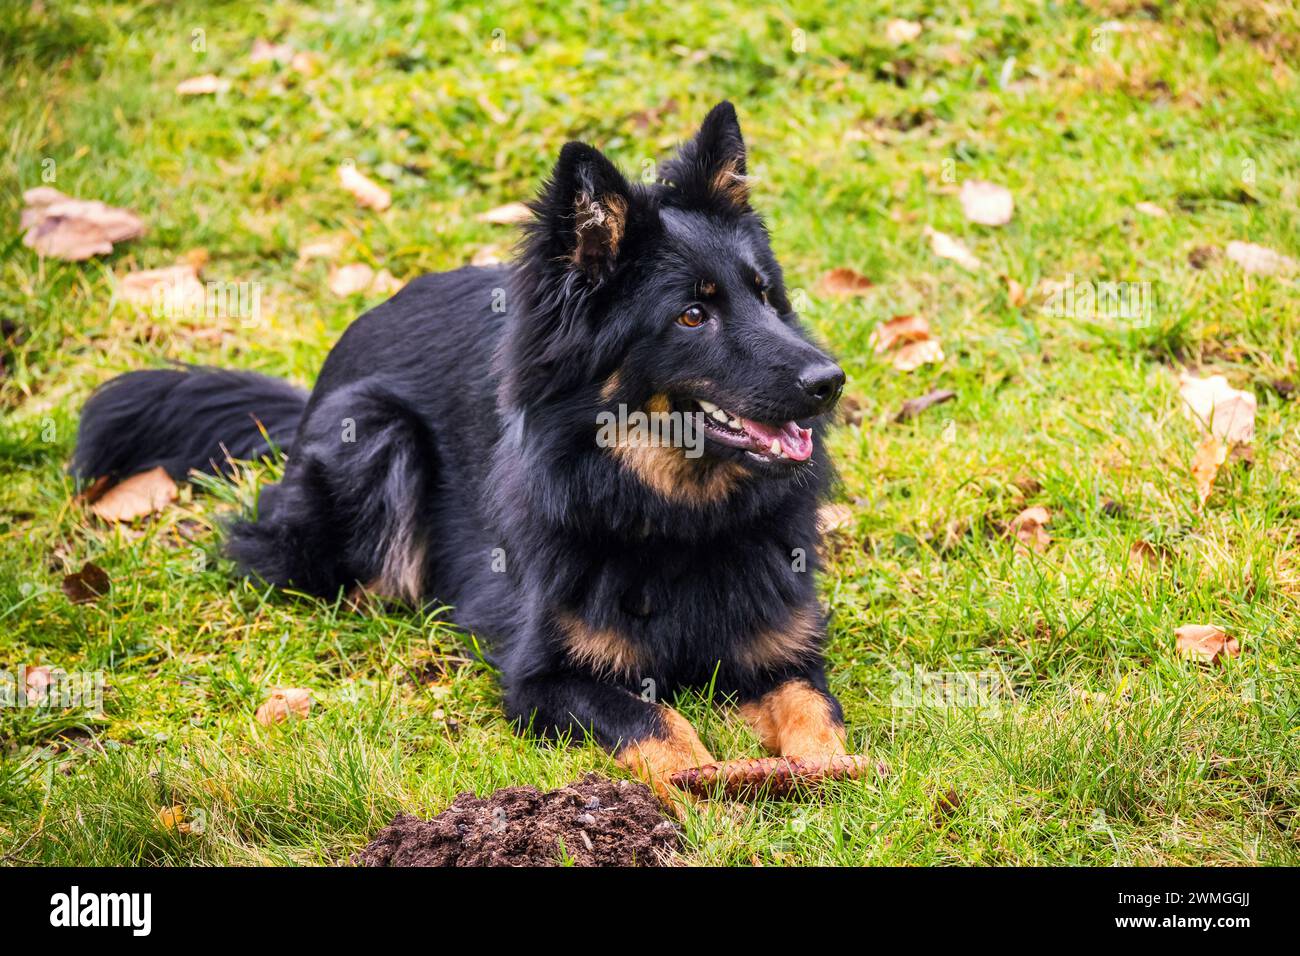 Schwarzer junger Hund (7 Monate alt) auf der Wiese mit Kegel in der Pfote liegend. Böhmischer Schäferhund, die beste nationale Rasse der Tschechischen republik. Stockfoto